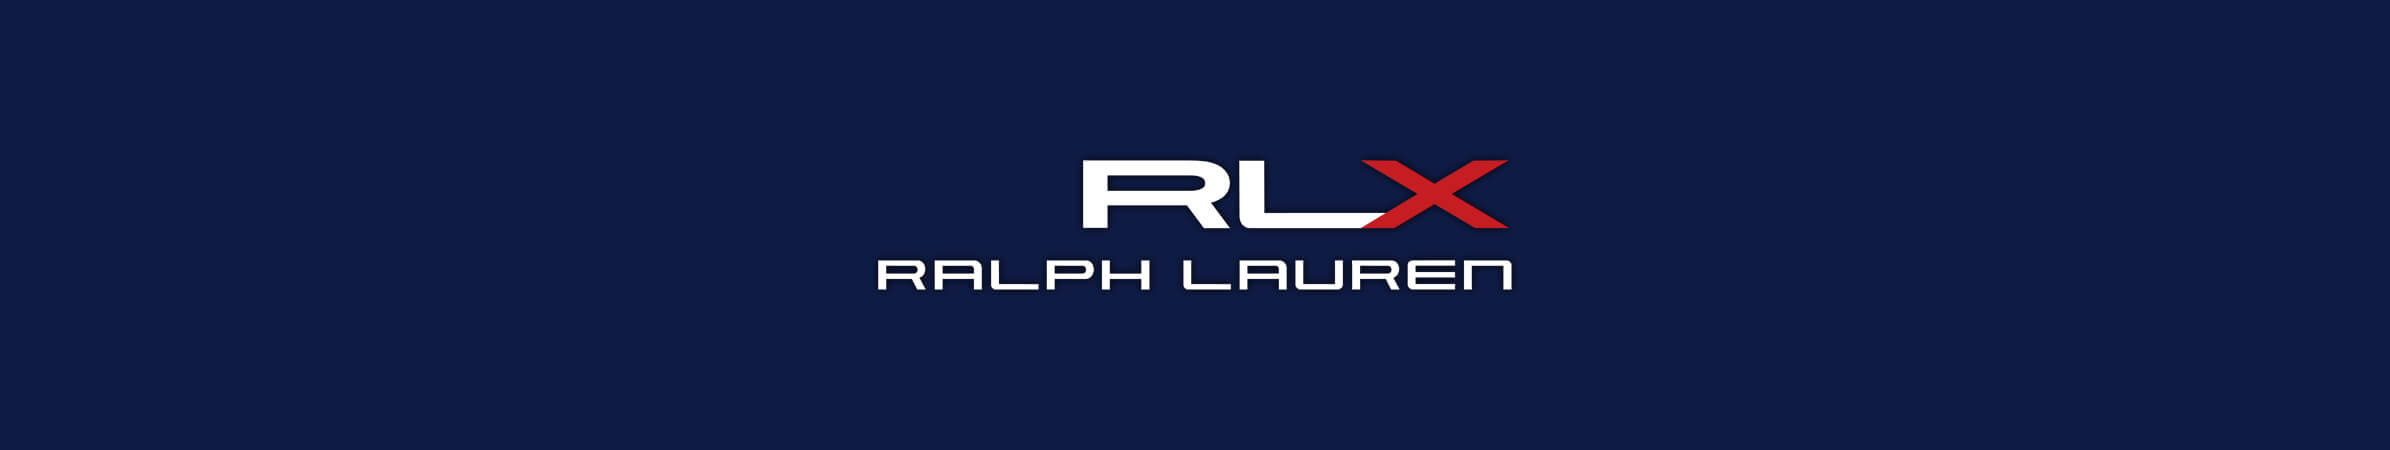 Ralph Lauren RLX Golf